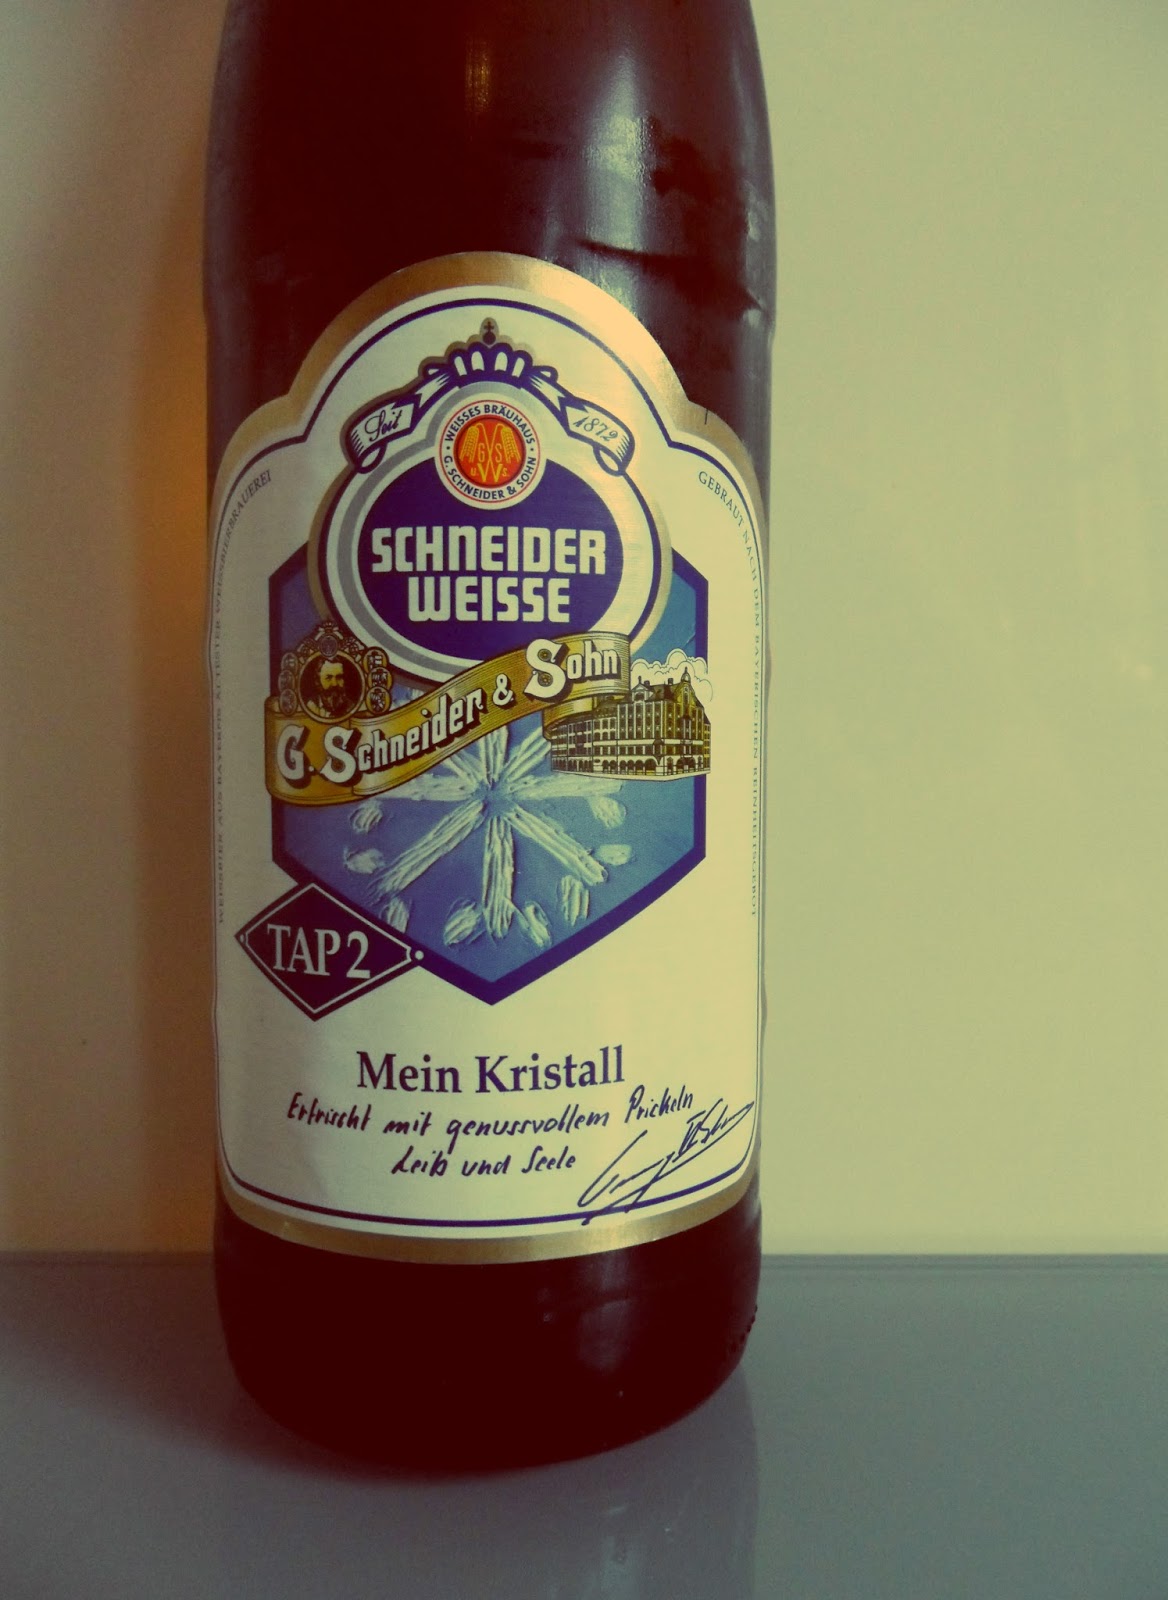 Cervecívoros Schneider Weisse TAP 2 Mein Kristall, la